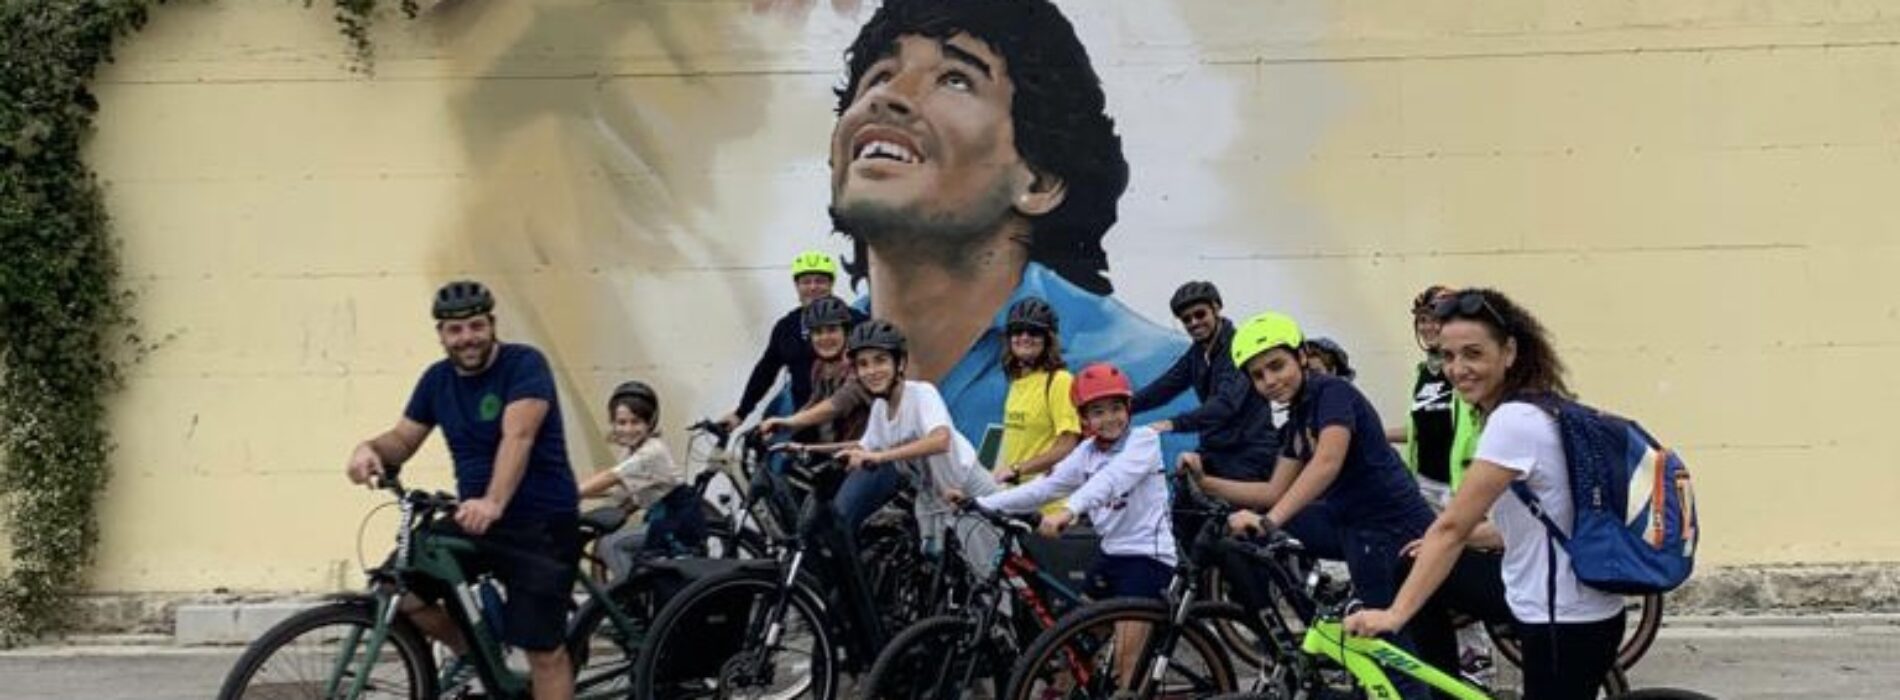 Graffiti tour a Caserta, con Ciccio Bike in giro per la città